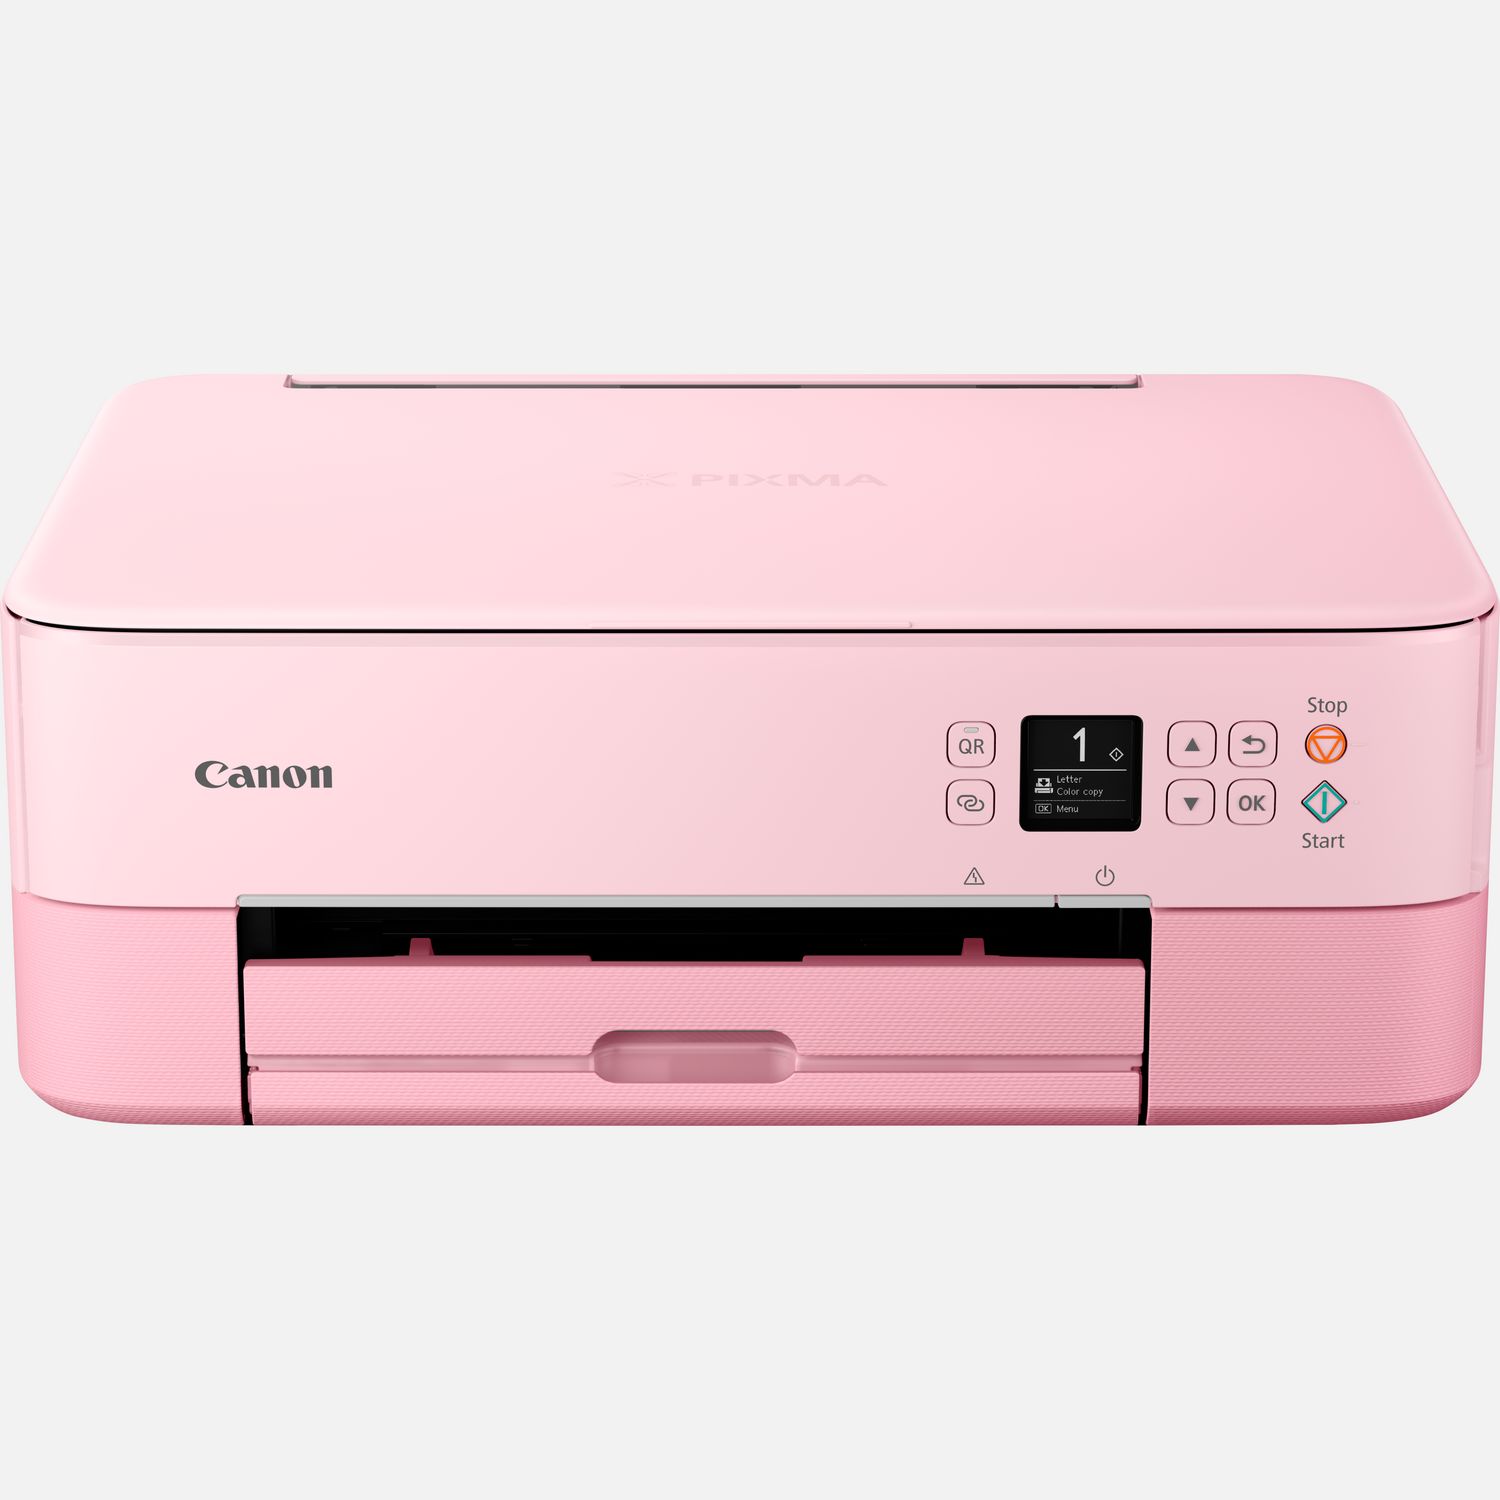 Image of Stampante fotografica wireless inkjet a colori multifunzione Canon PIXMA TS5352a, rosa